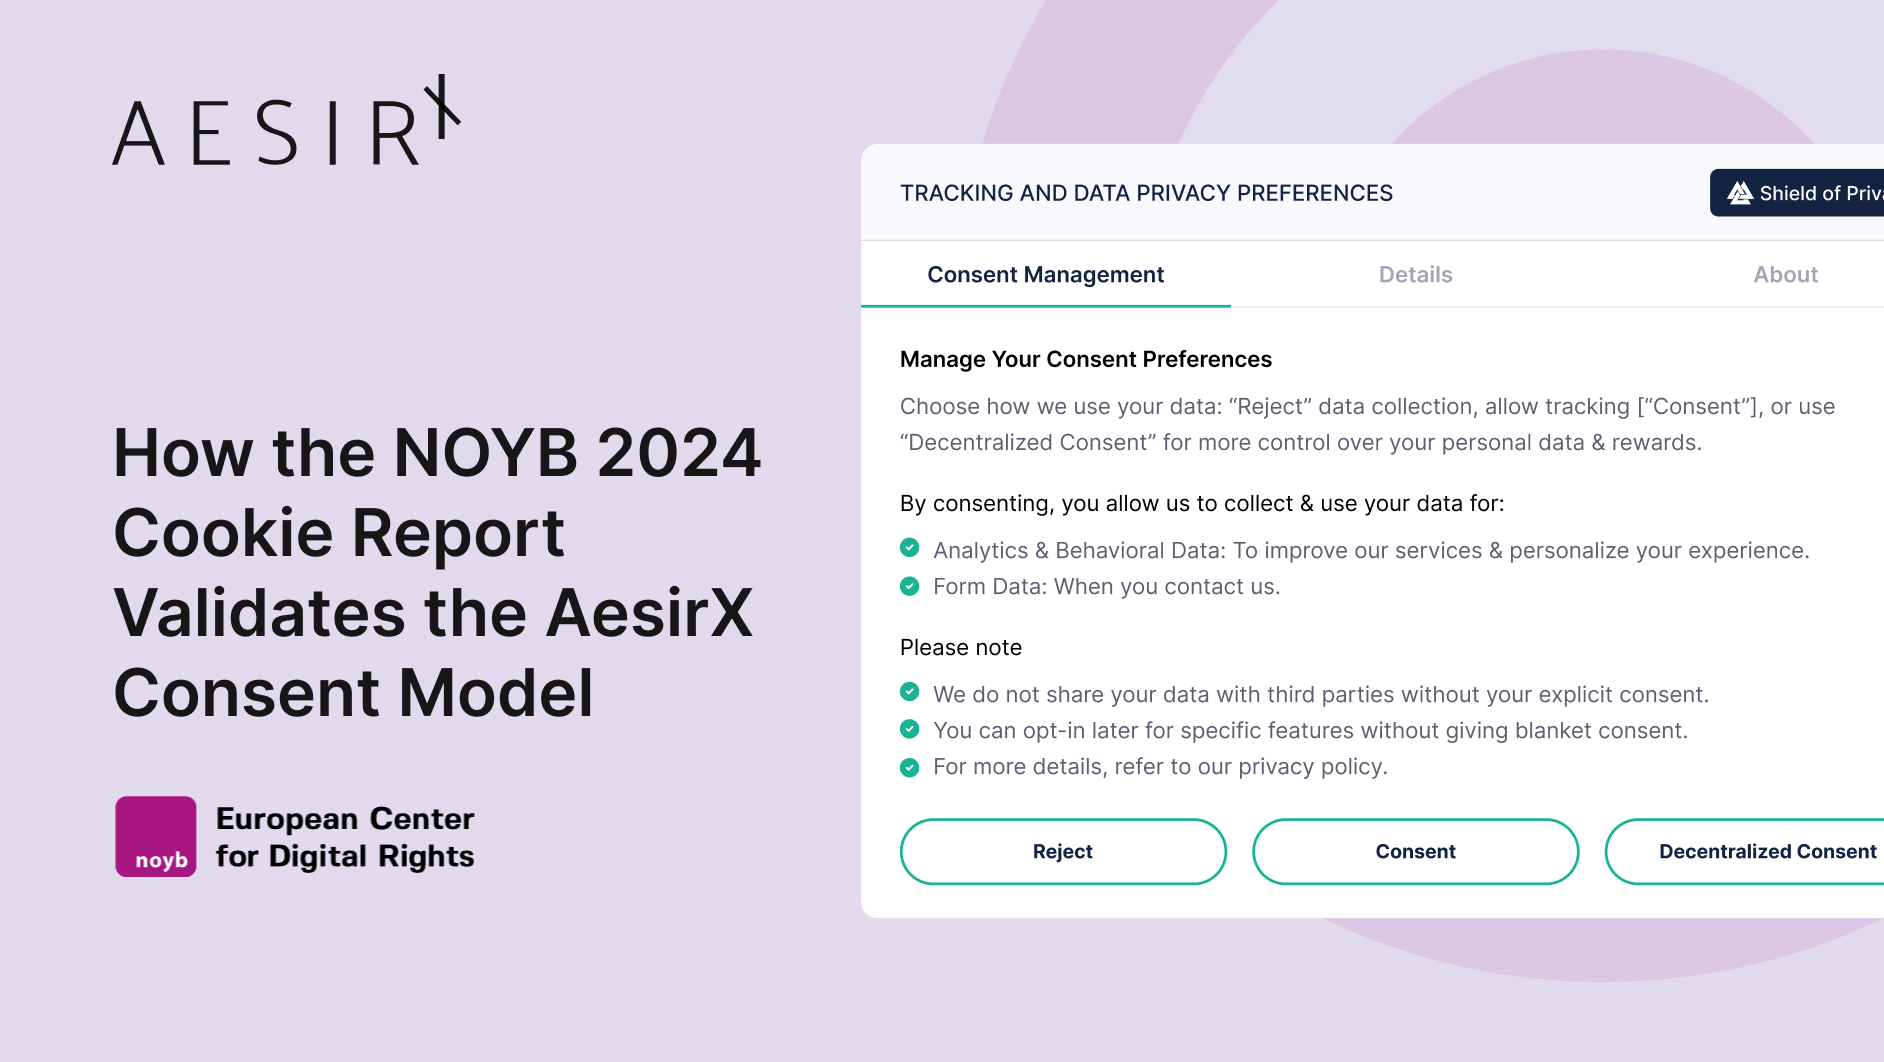 How the NOYB 2024 Cookie Report Validates the AesirX Consent Model